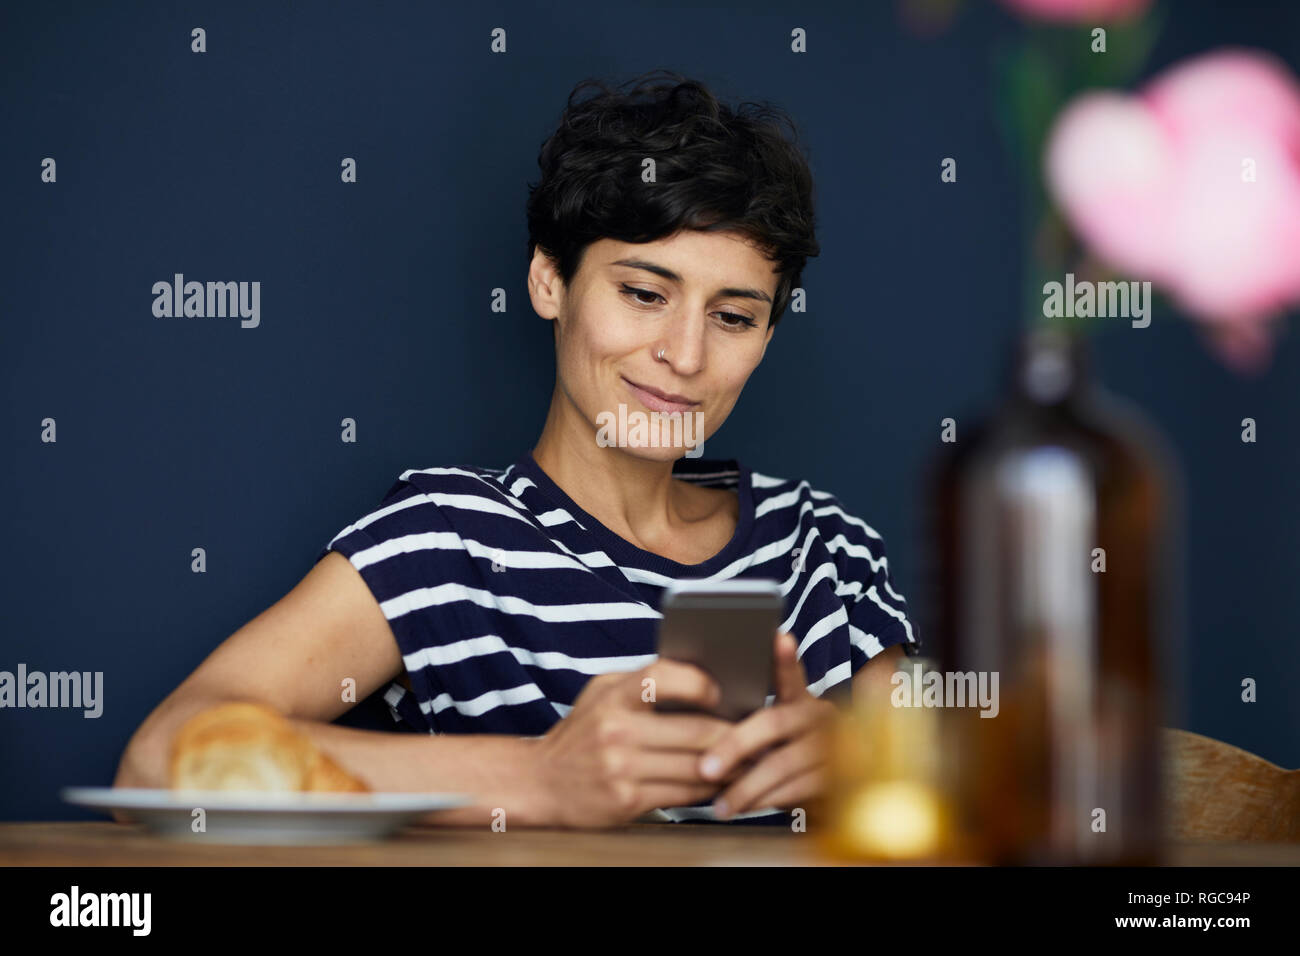 Lächelnde Frau zu Hause an den hölzernen Tisch Handy prüfen. Stockfoto